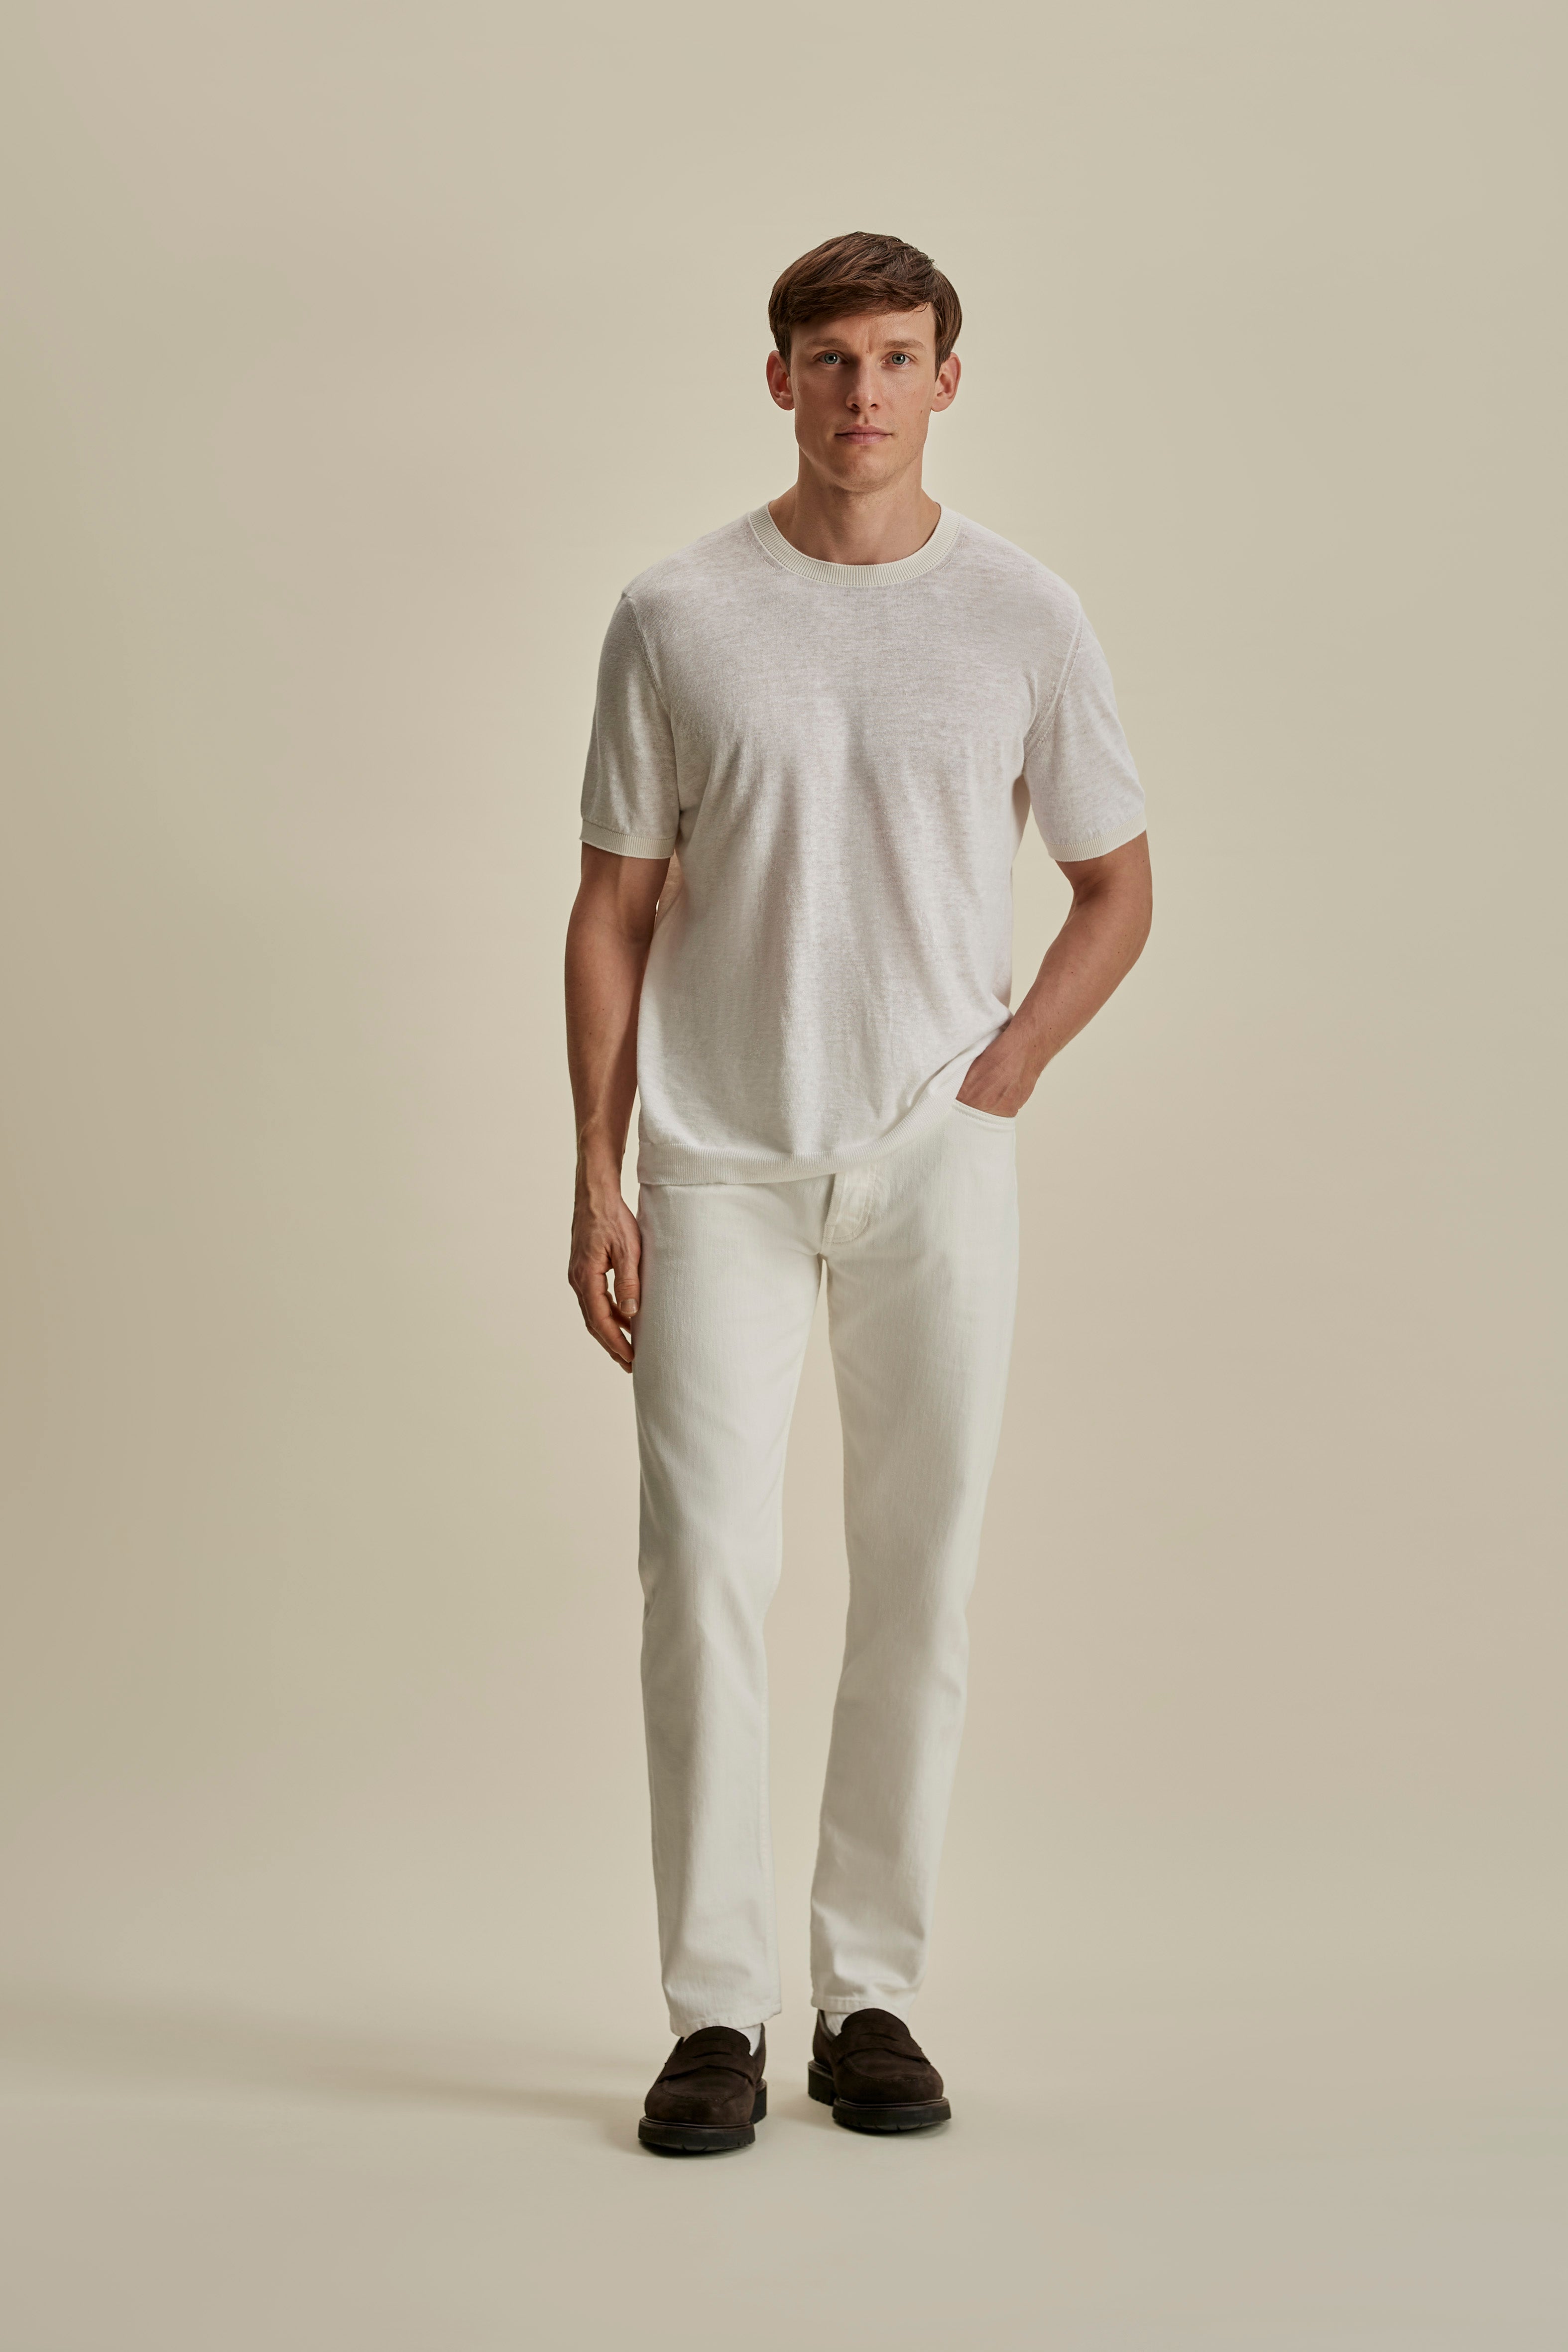 Linen Cotton Contrast Rib T-Shirt White White Full Length Model Image